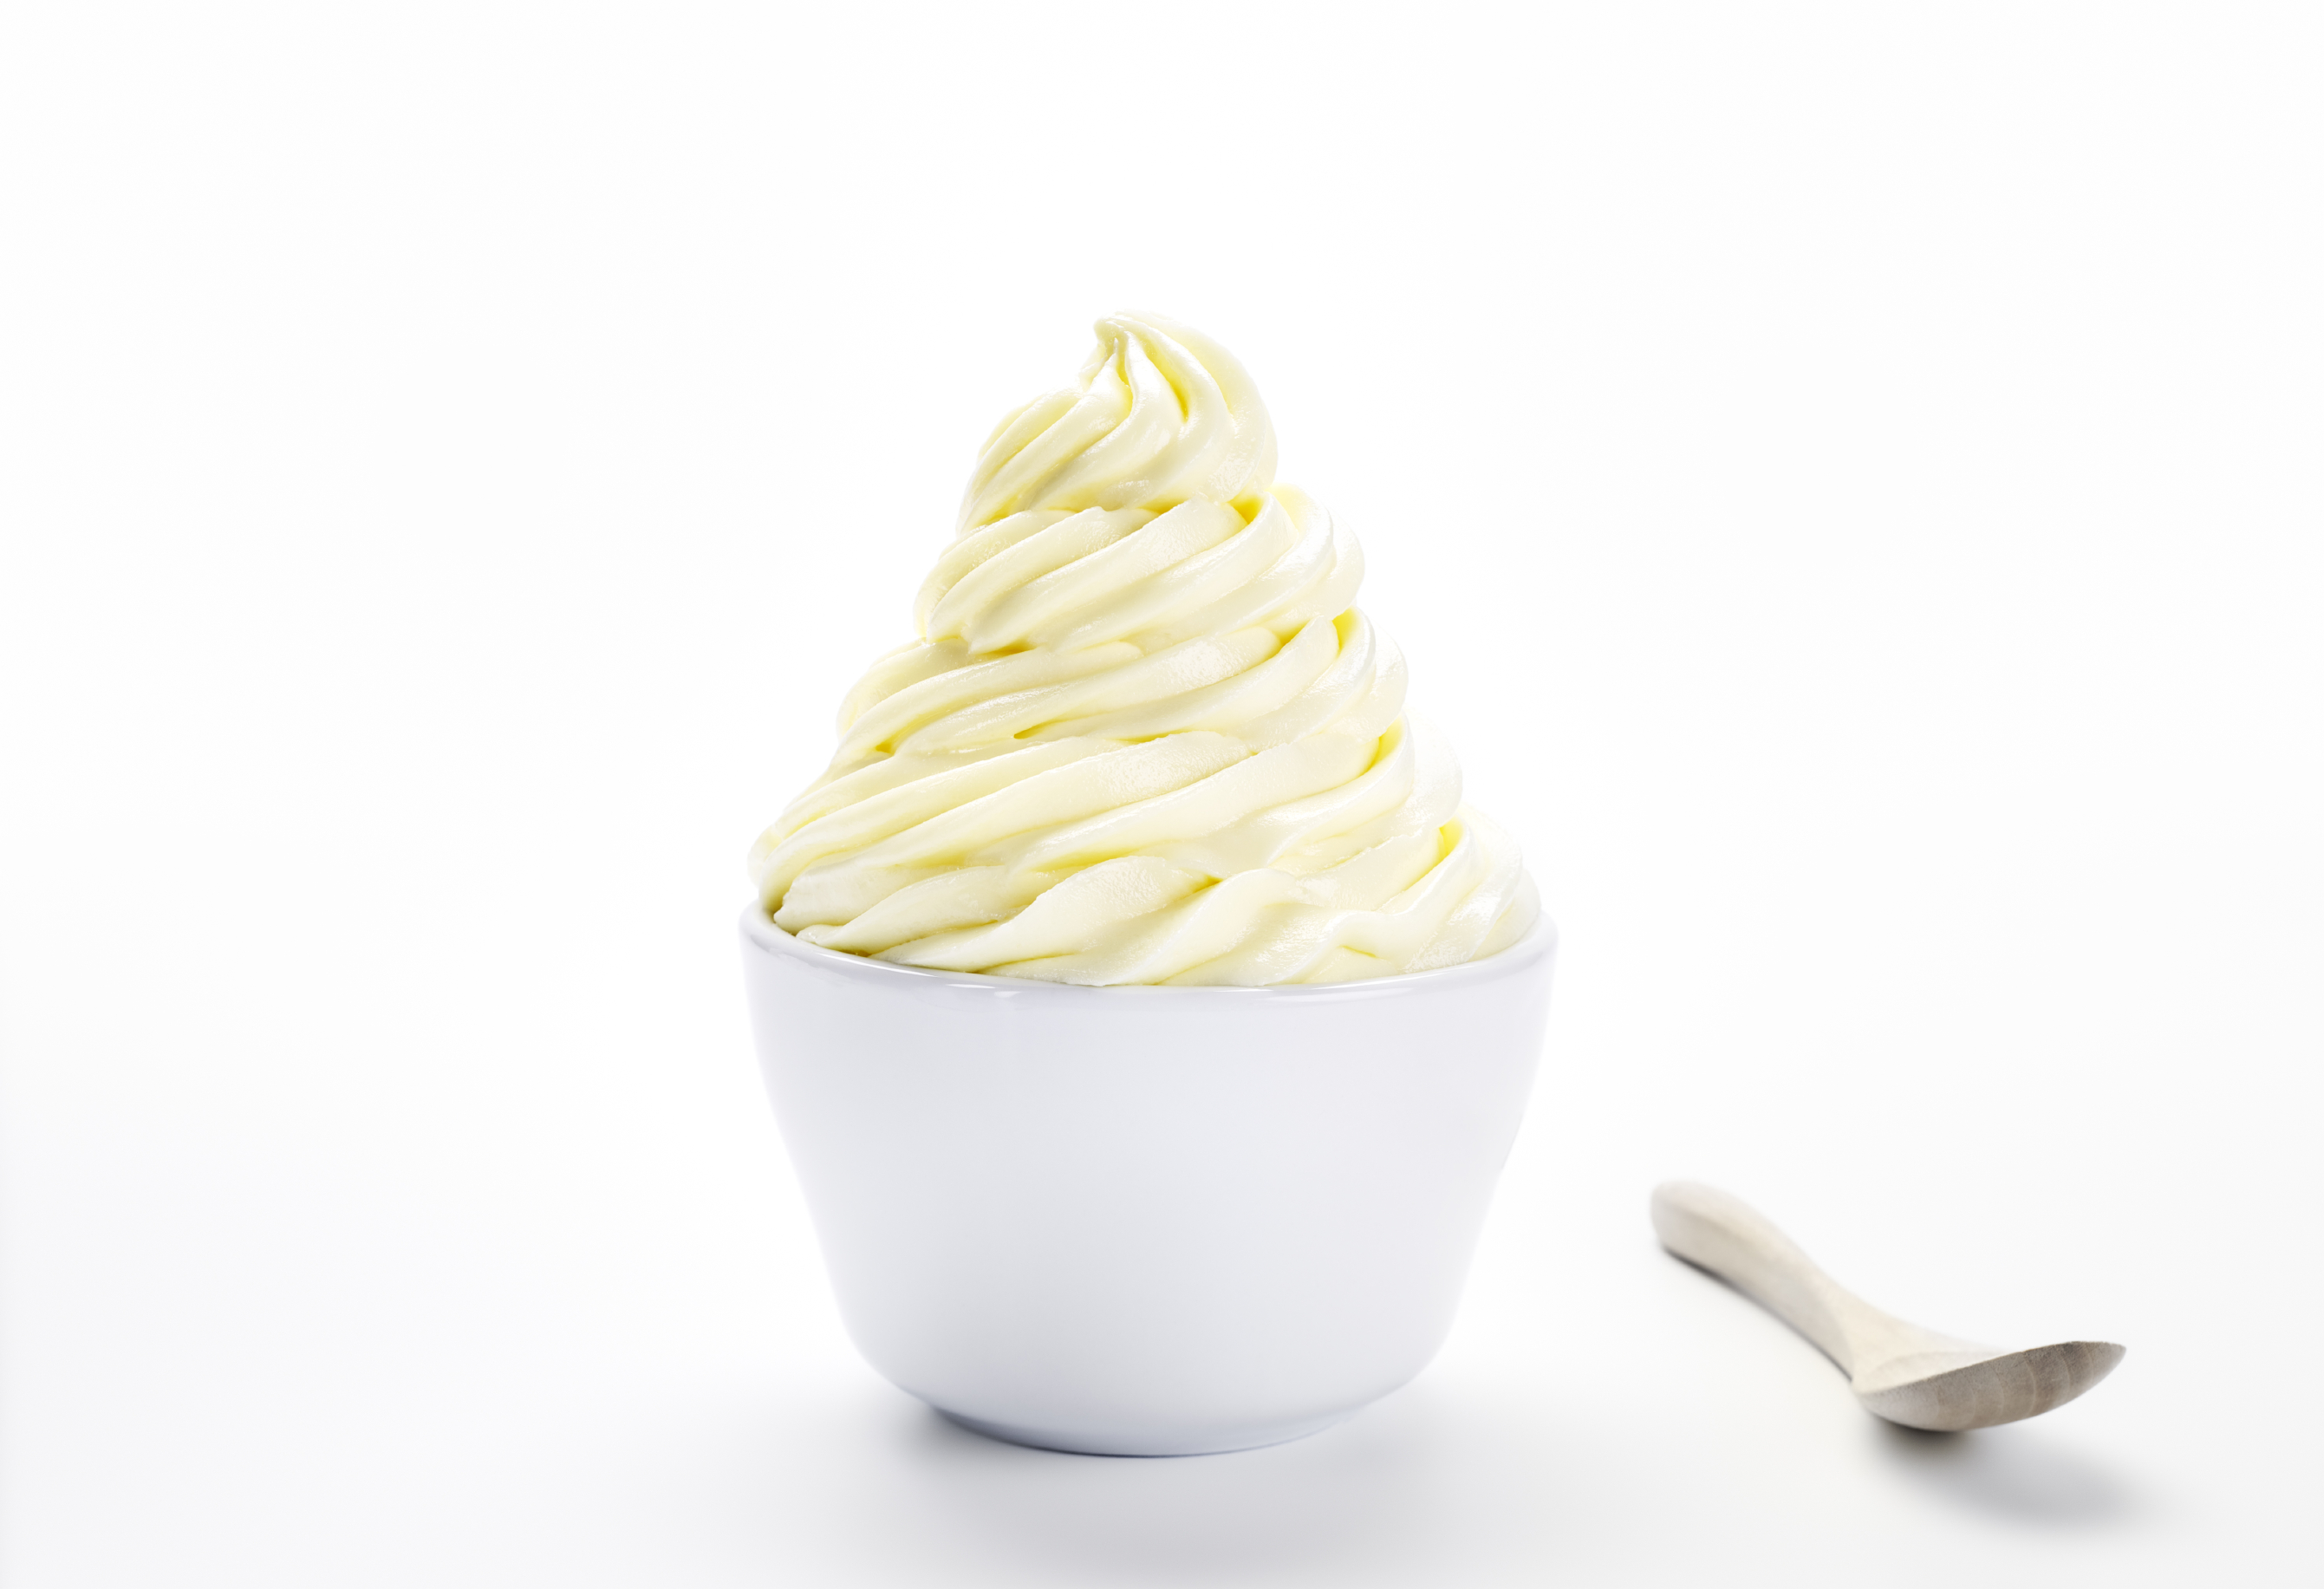 https://wholesalefrozenyogurt.com/images/backgrounds/products/vanillafrozenyogurt.jpg